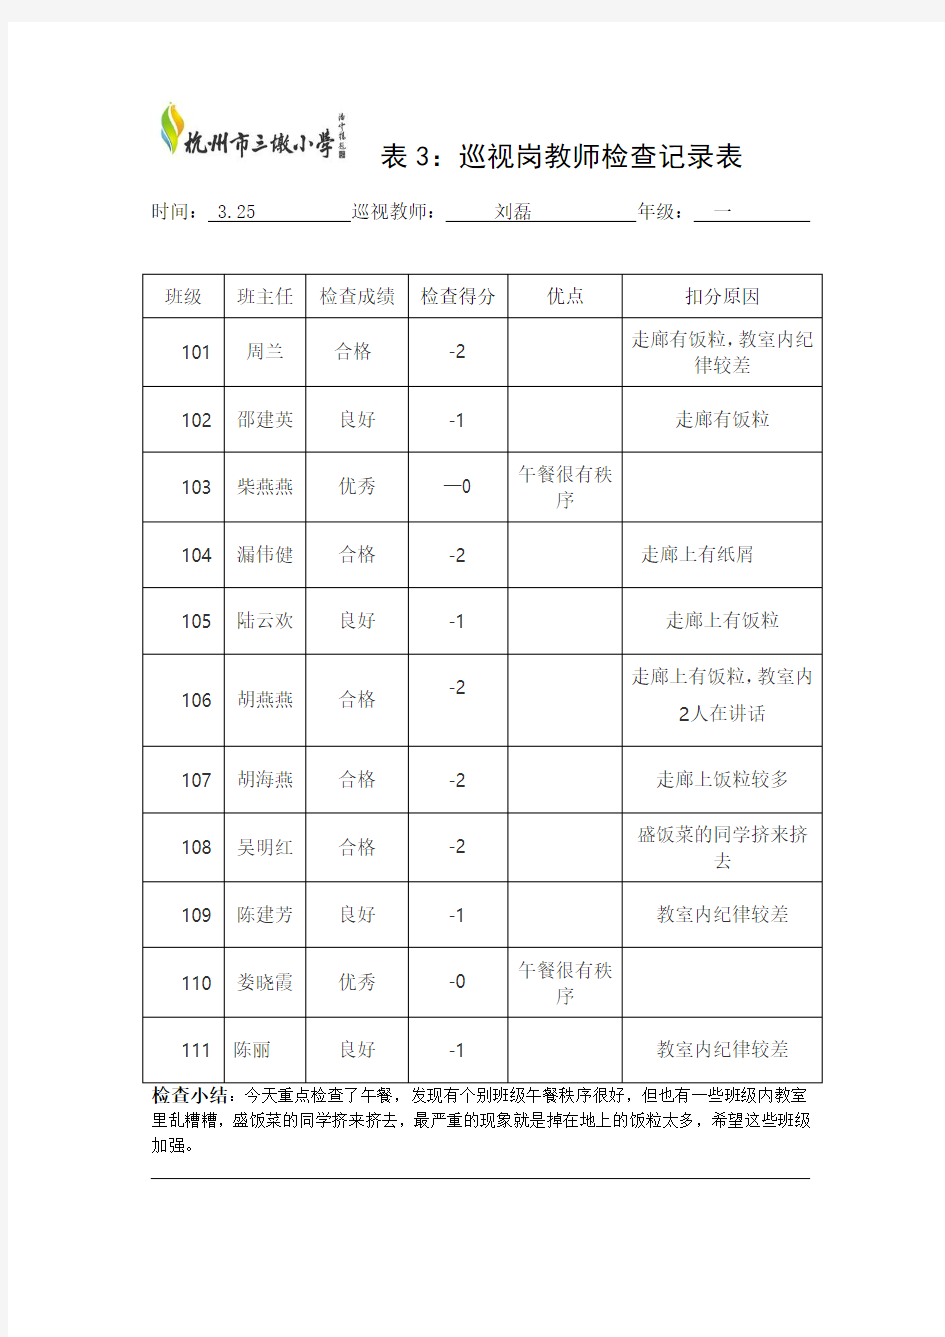 值周教师检查记录表杭州市三墩小学首页